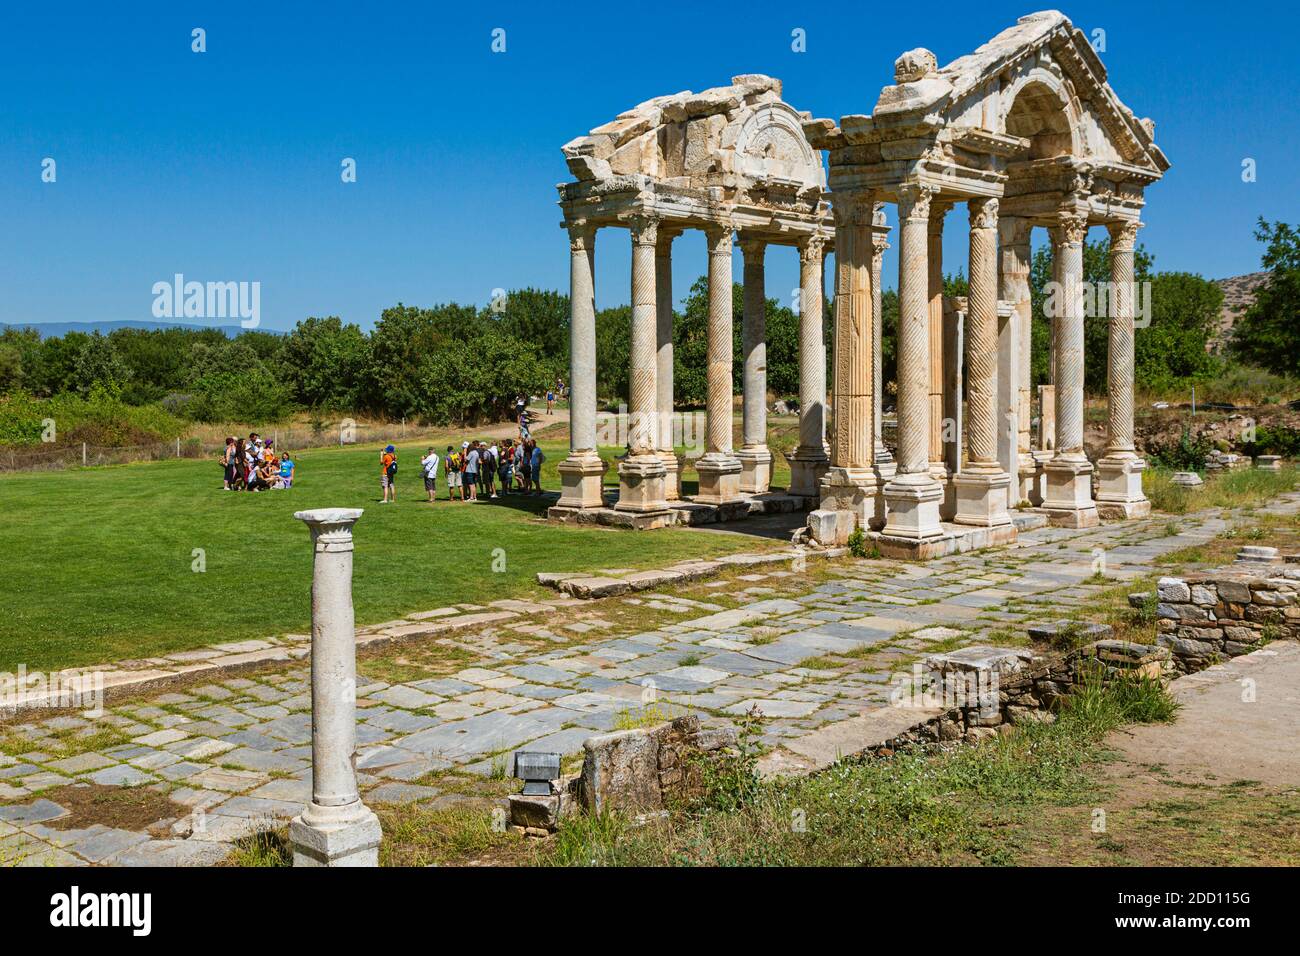 Ruines d'Aphrodisias, province d'Aydin, Turquie. Porte du 2ème siècle connue sous le nom de Tetrapylon. Aphrodisias, site classé au patrimoine mondial de l'UNESCO, a été d Banque D'Images